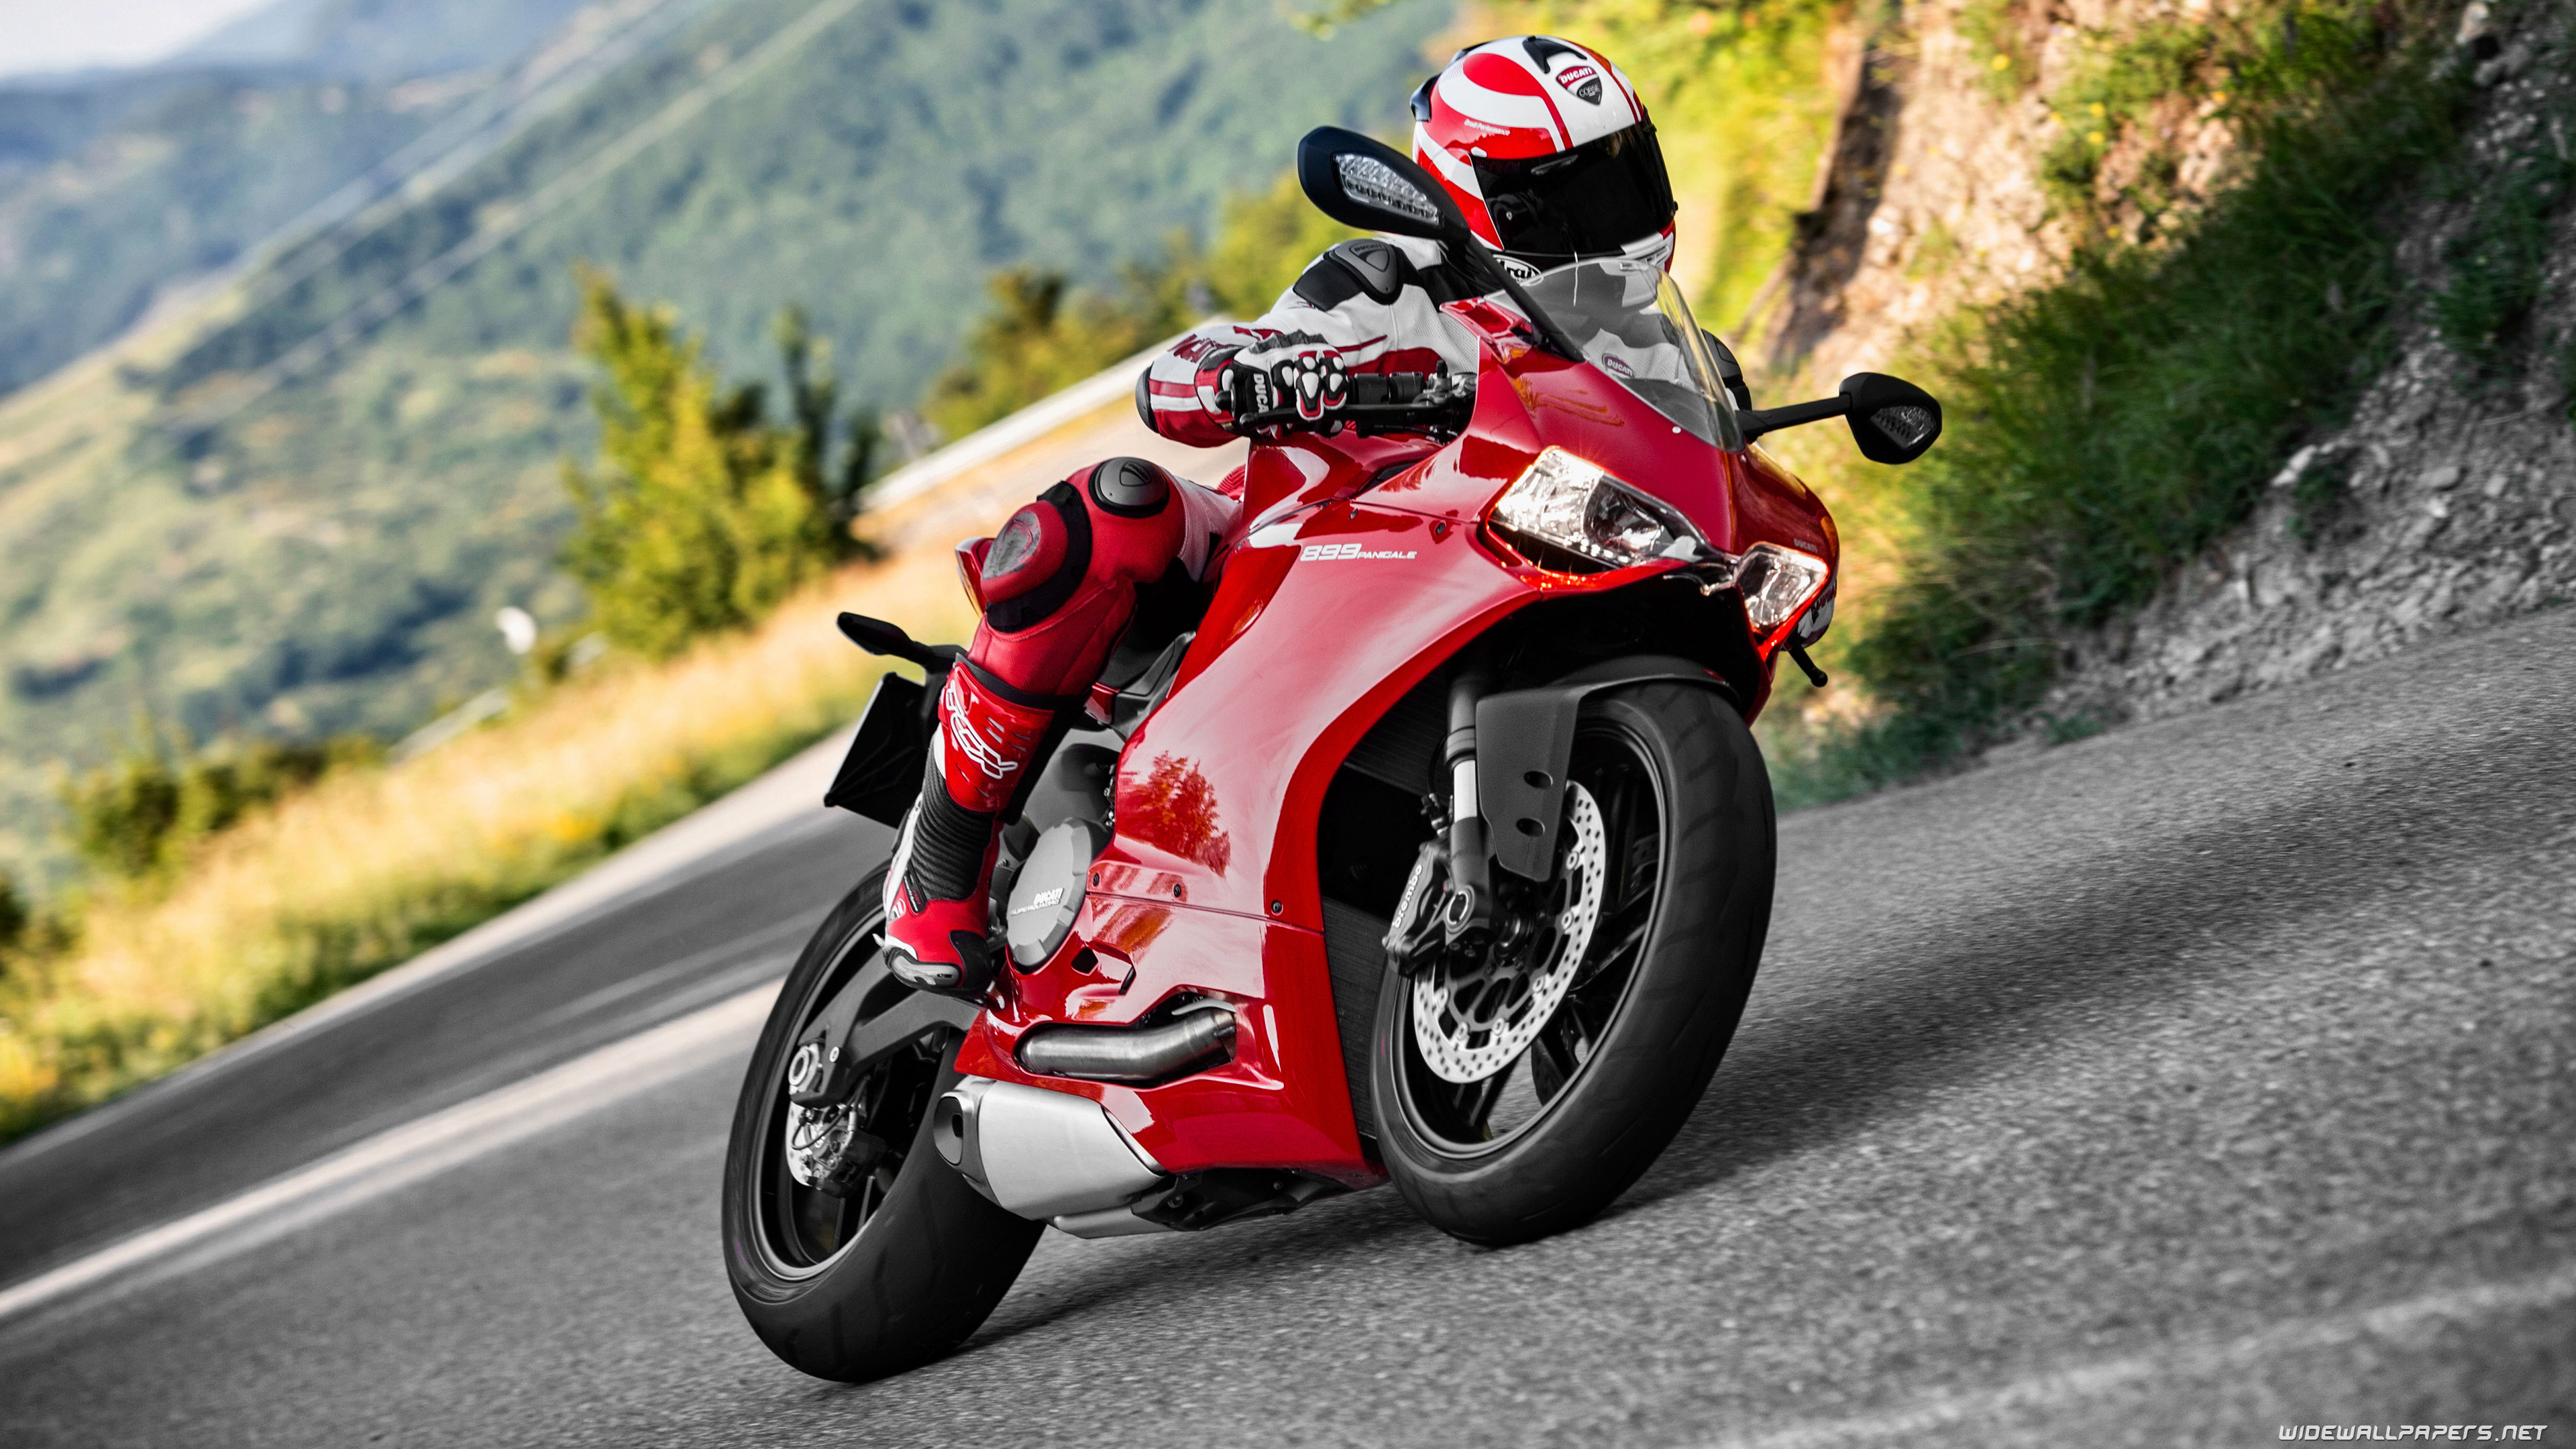 Ducati Superbike 899 Panigale motorcycle desktop